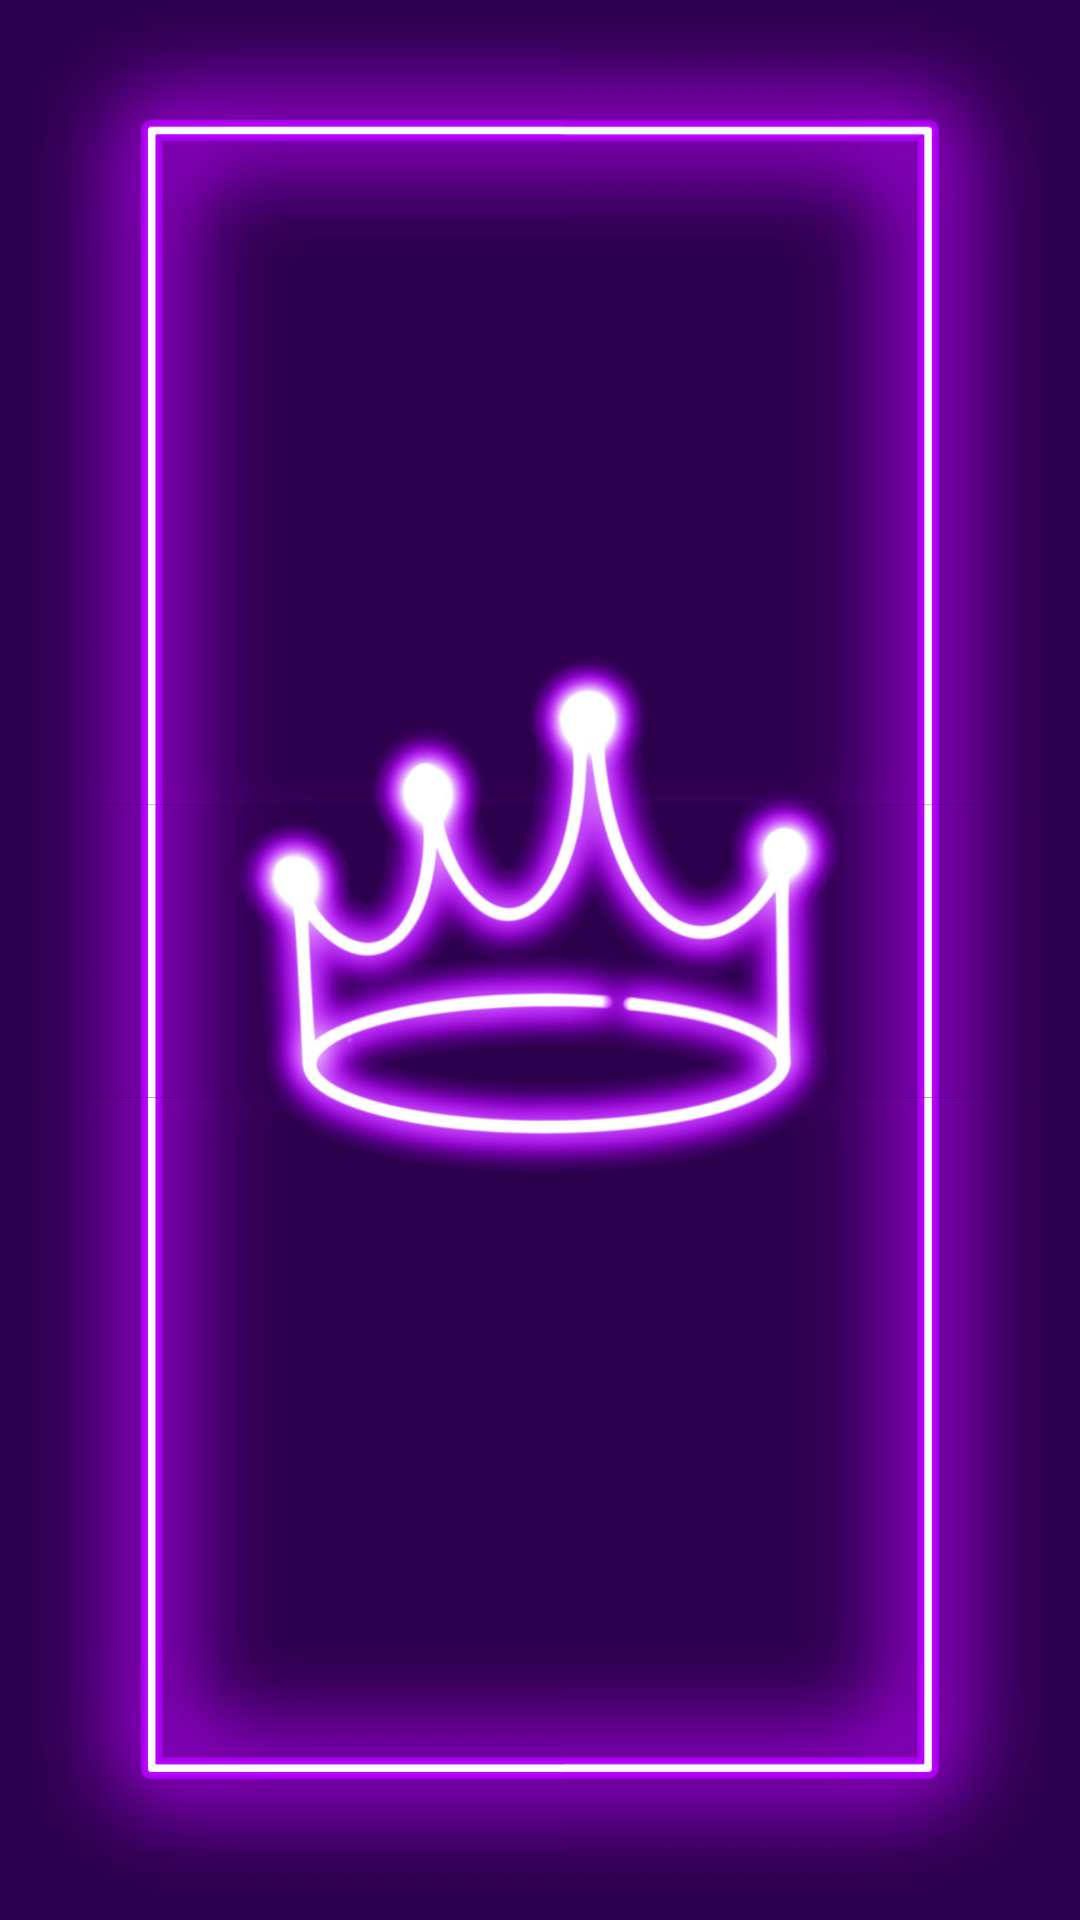 Aesthetic neon purple crown wallpaper for phone and desktop. - Purple, dark purple, crown